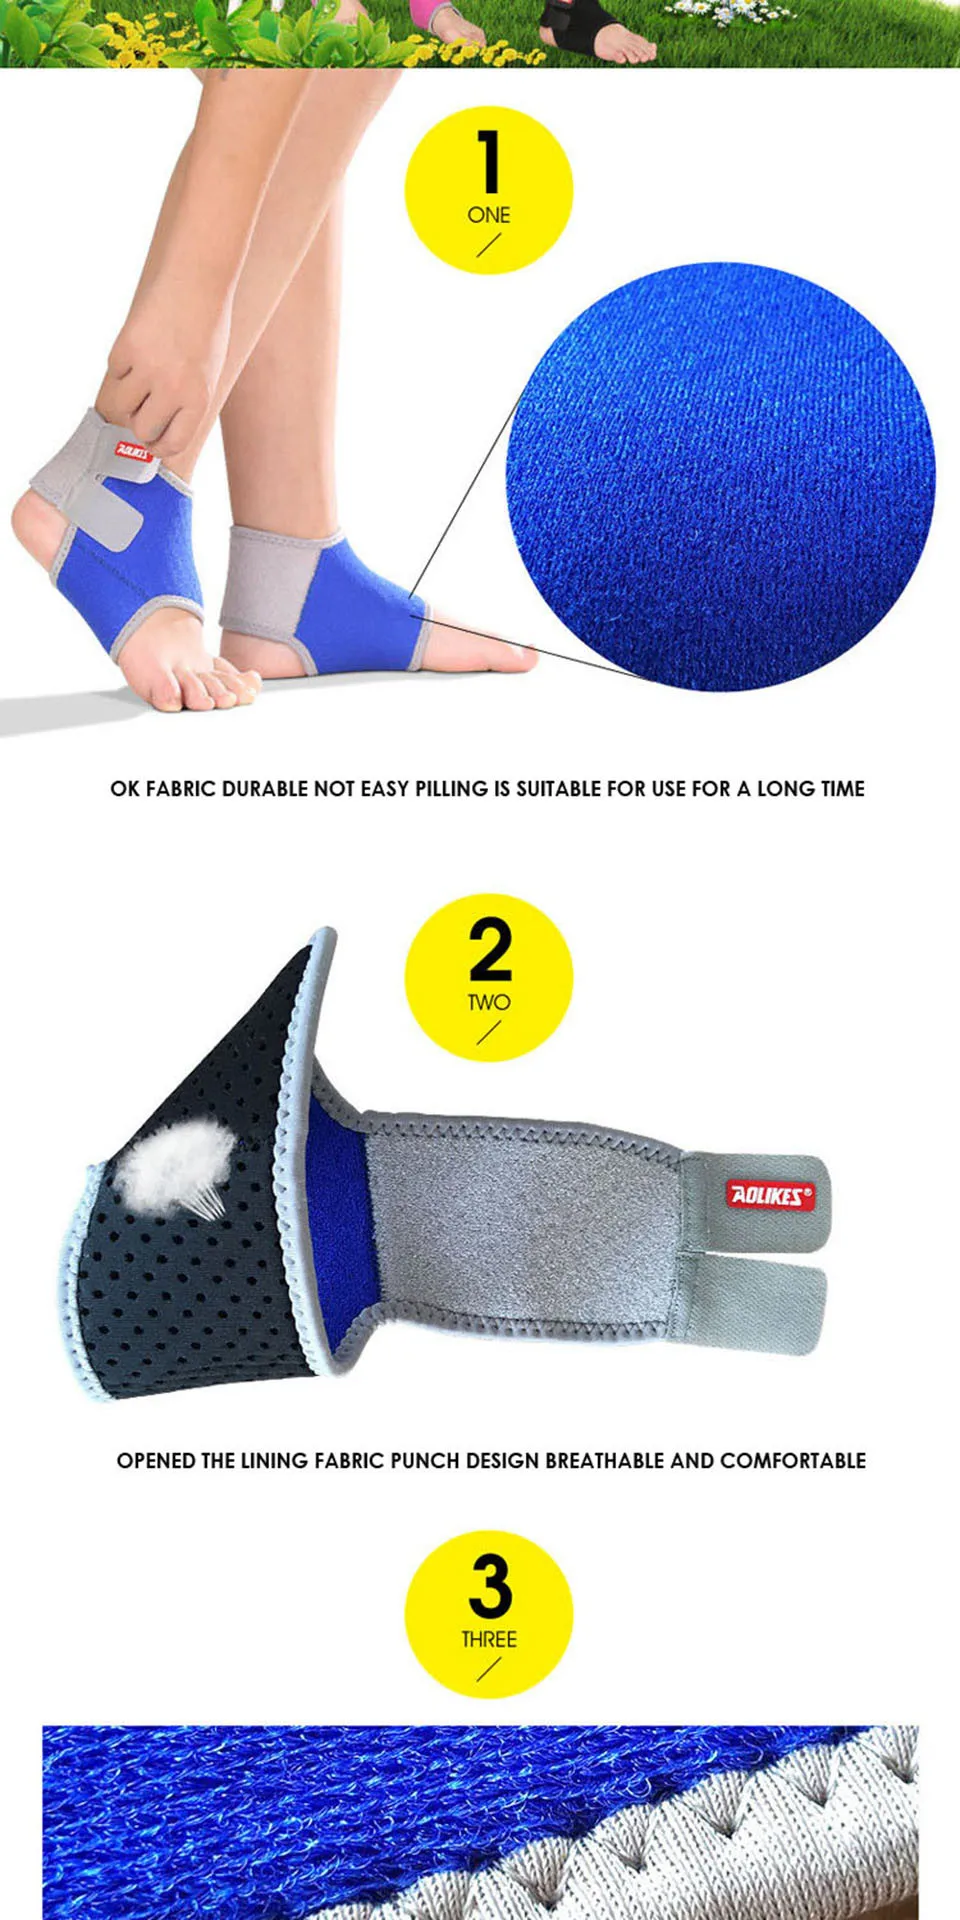 AOLIKES 1 пара Дети лодыжки Поддержка Спорт из дышыщей ткани для лодыжки эластичная повязка протектор Футбол Баскетбол эластичные лодыжки Pad Детская безопасность